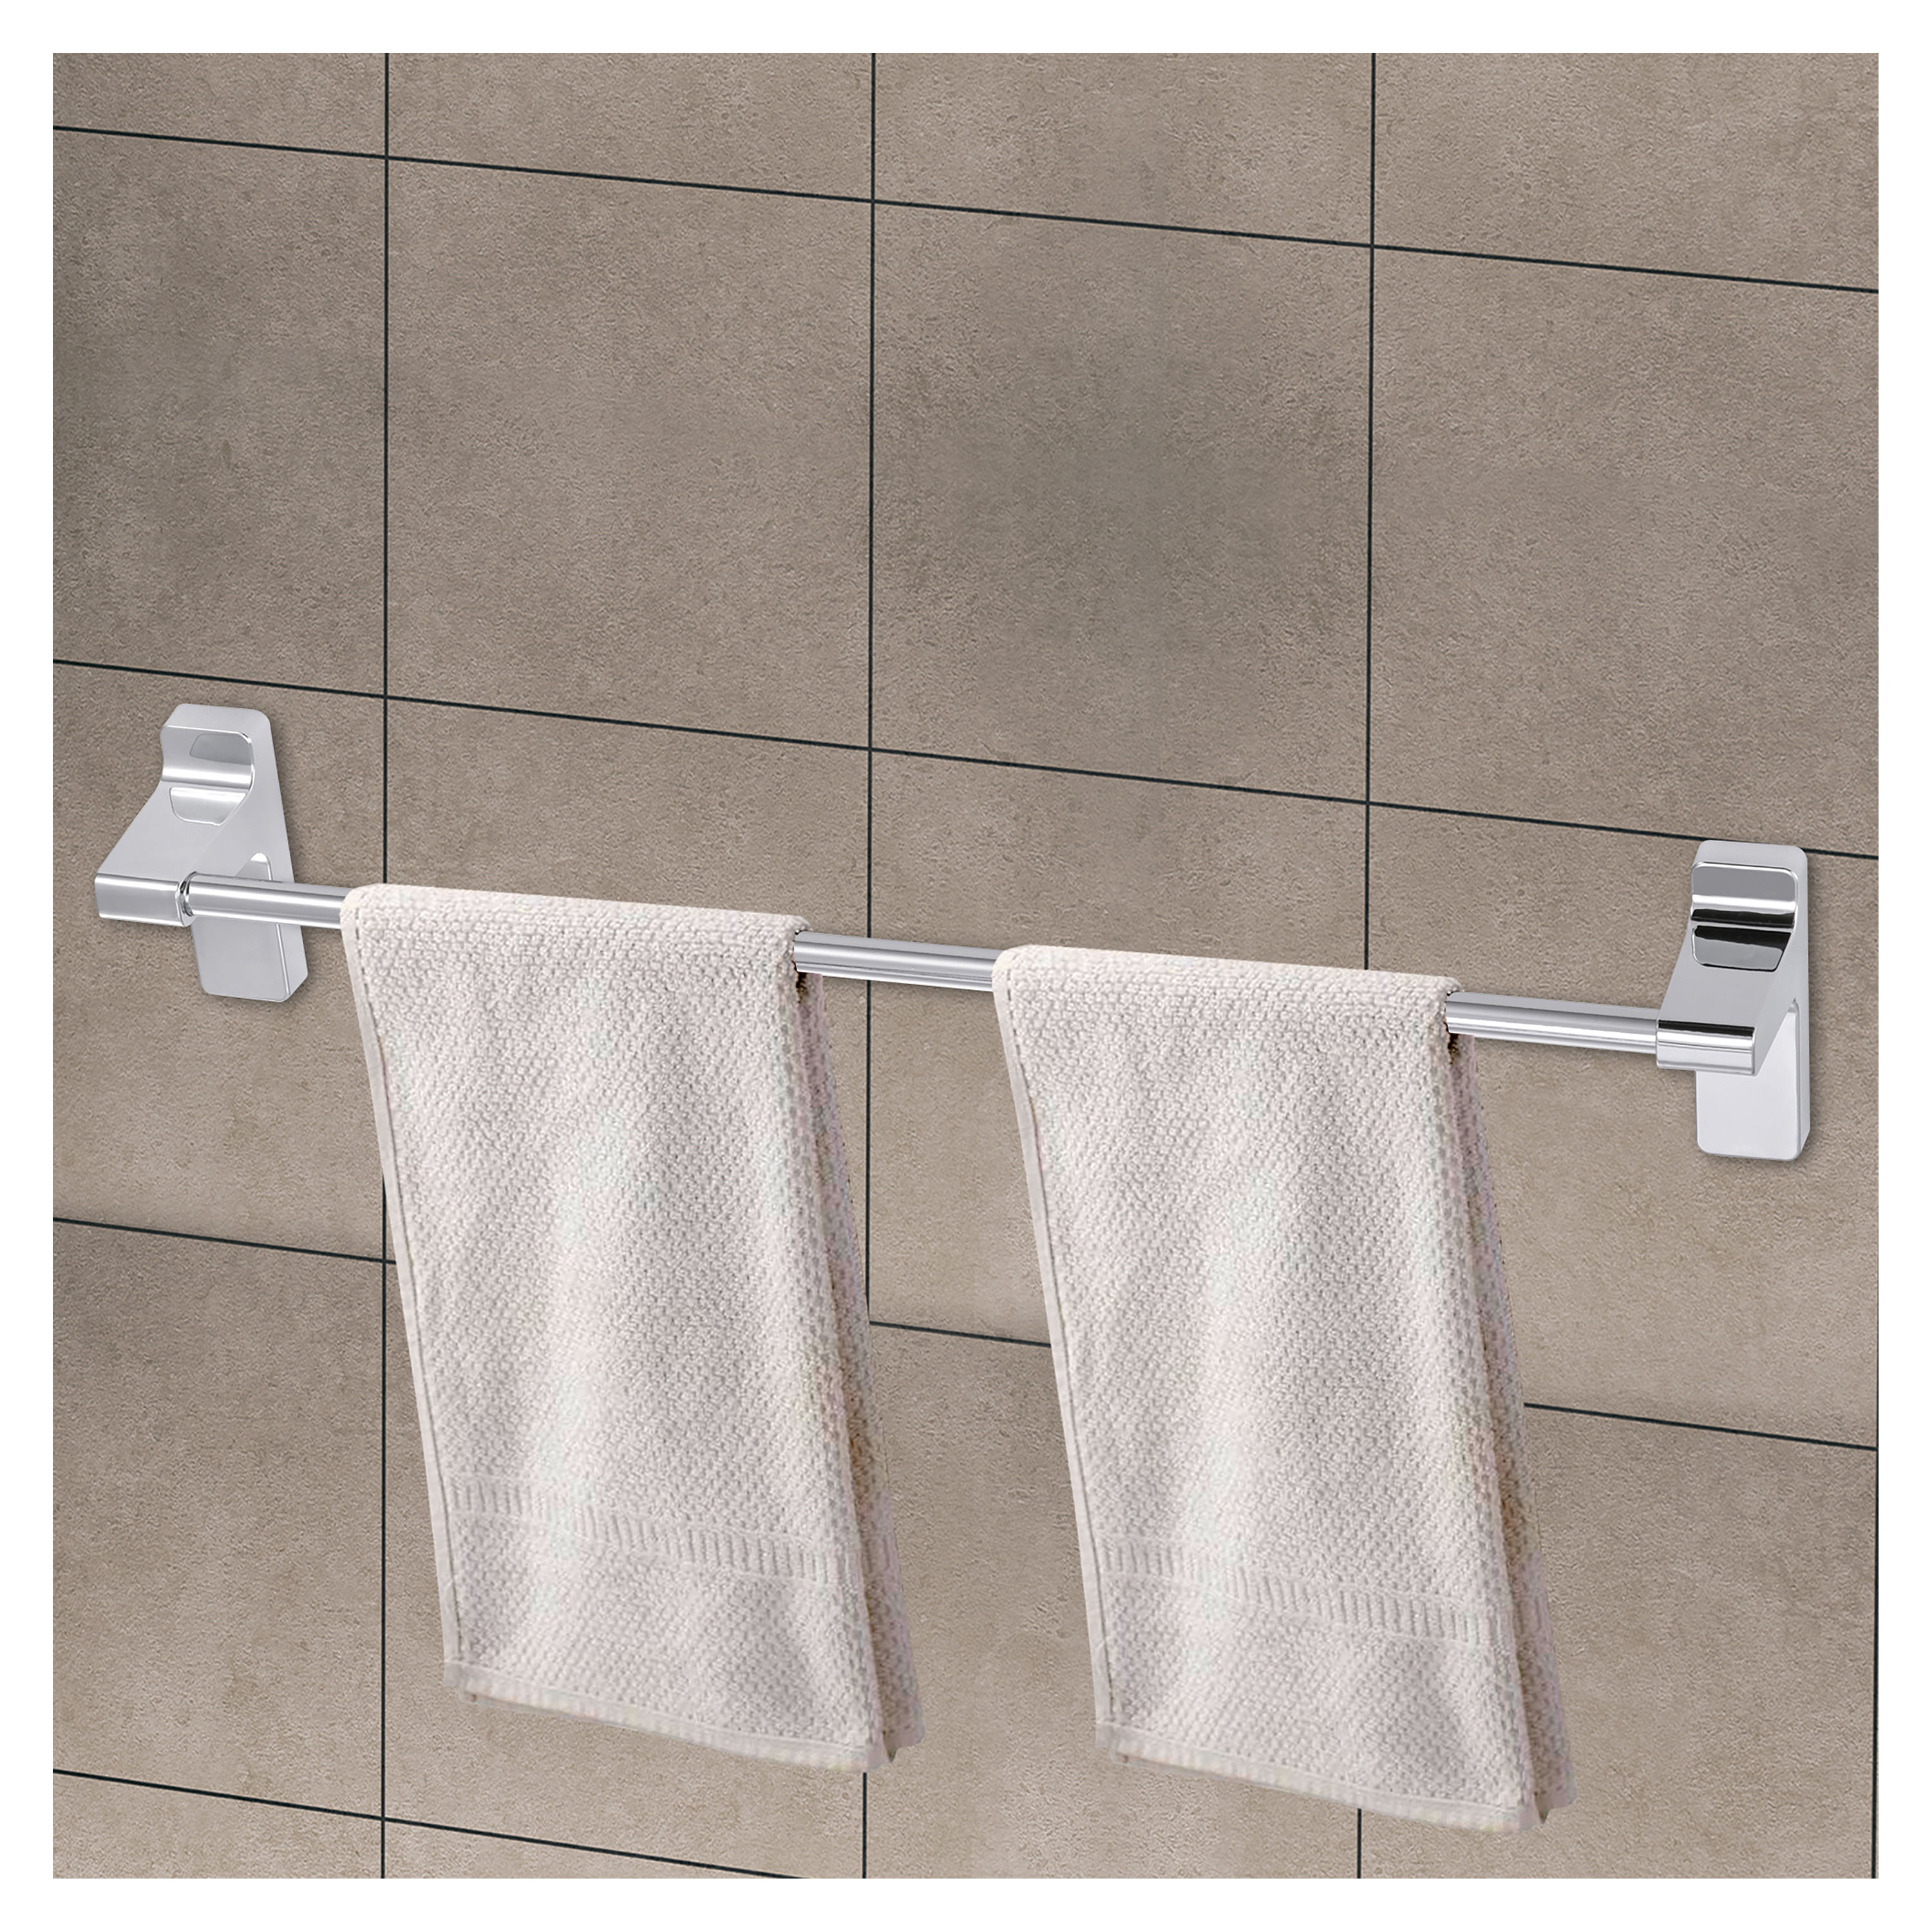 Calienta toallas 8 barras - SaniBaño